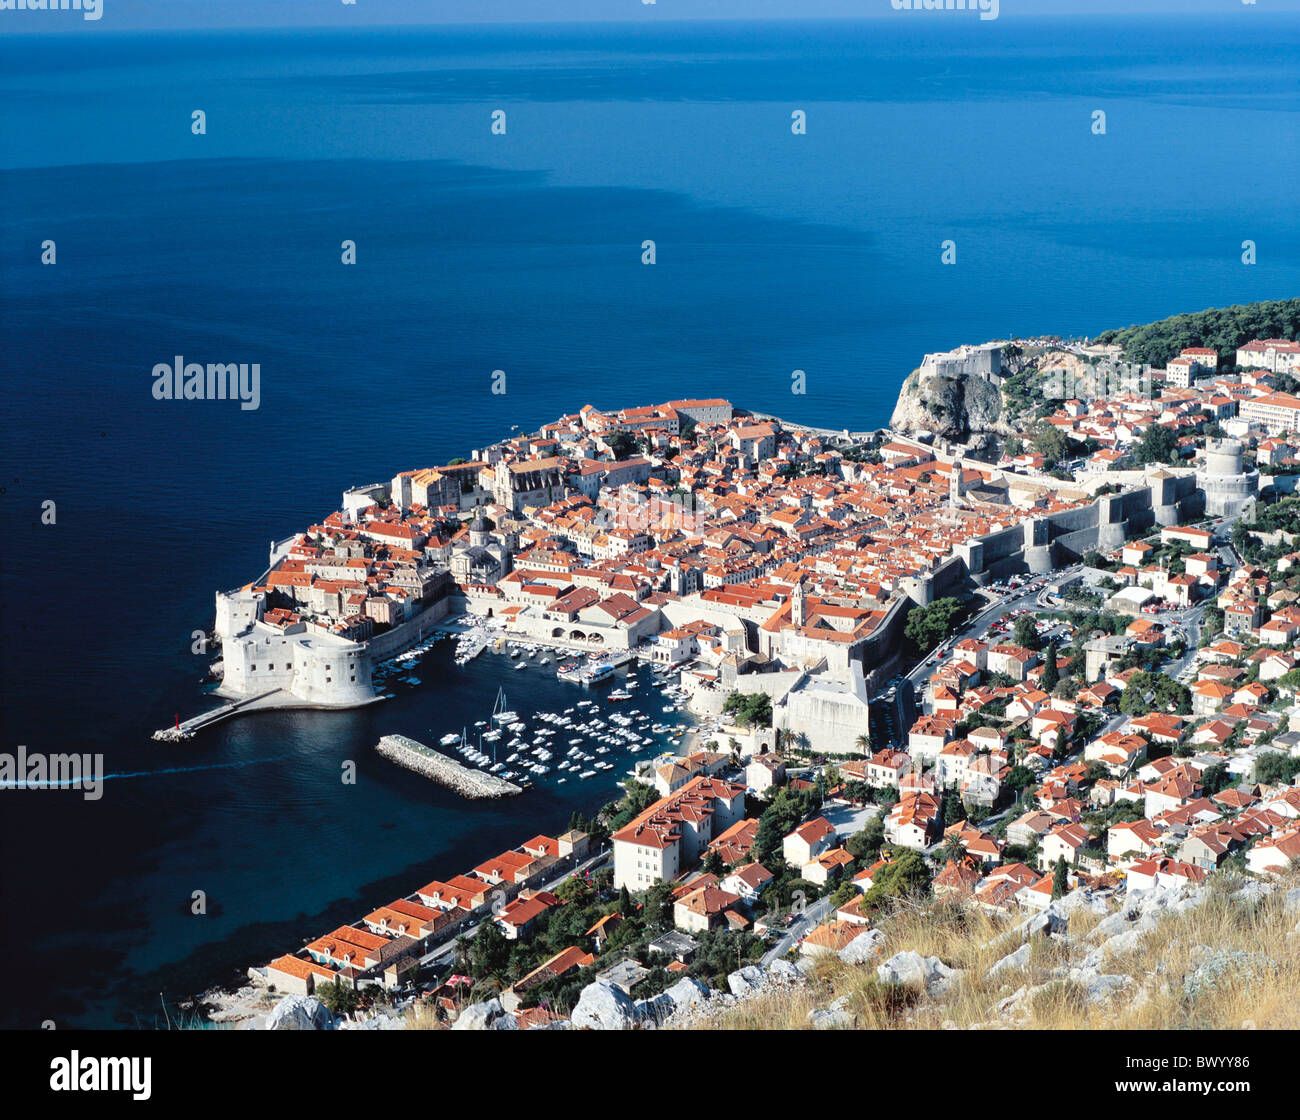 Vieille Ville historique de Dubrovnik Croatie Dalmatie coast sea town city sommaire patrimoine culturel mondial de l'UNESCO Banque D'Images